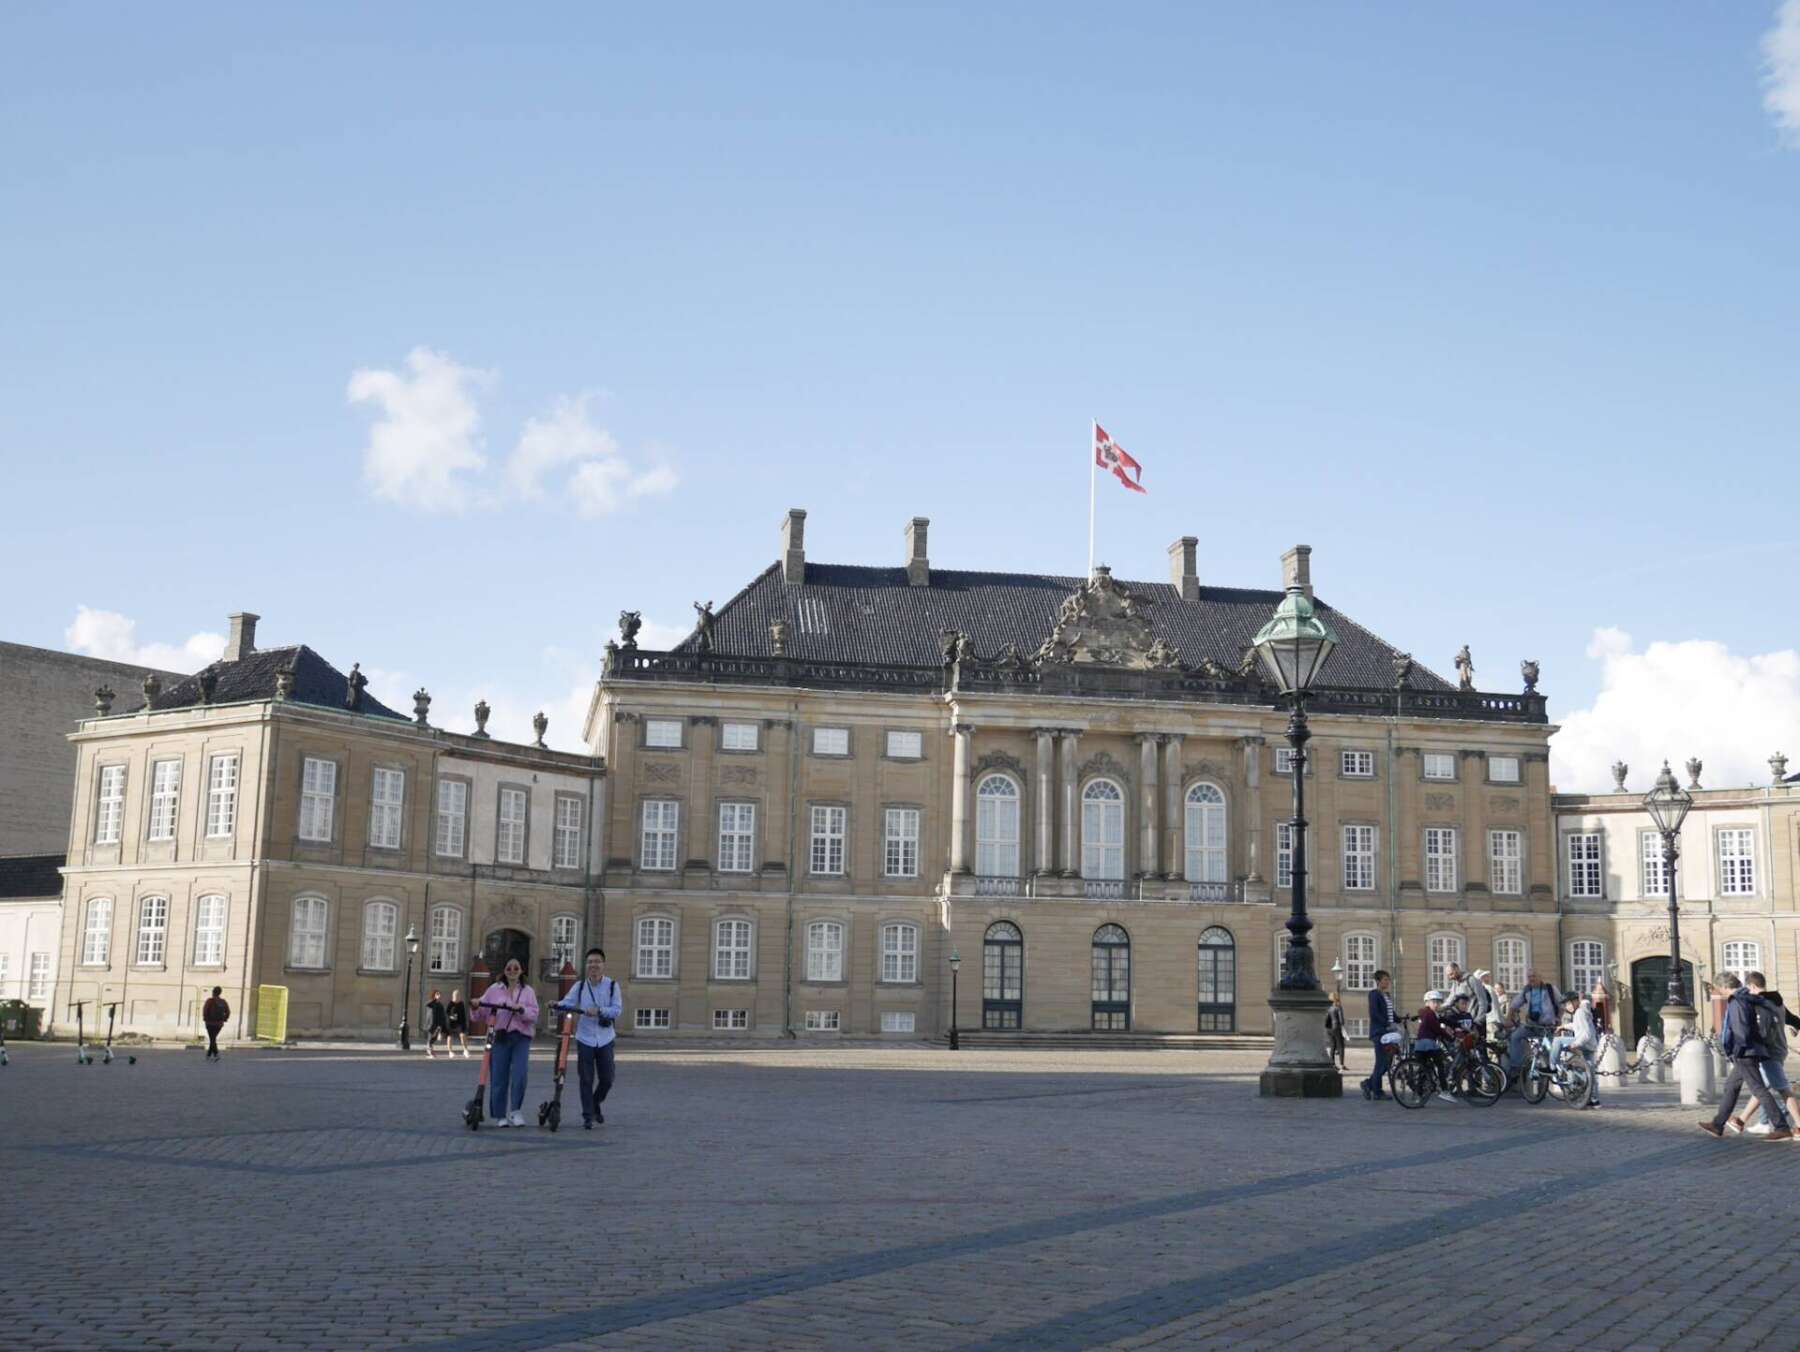 พระราชวังอมาเลียนบอร์ก (Amalienborg Palace)